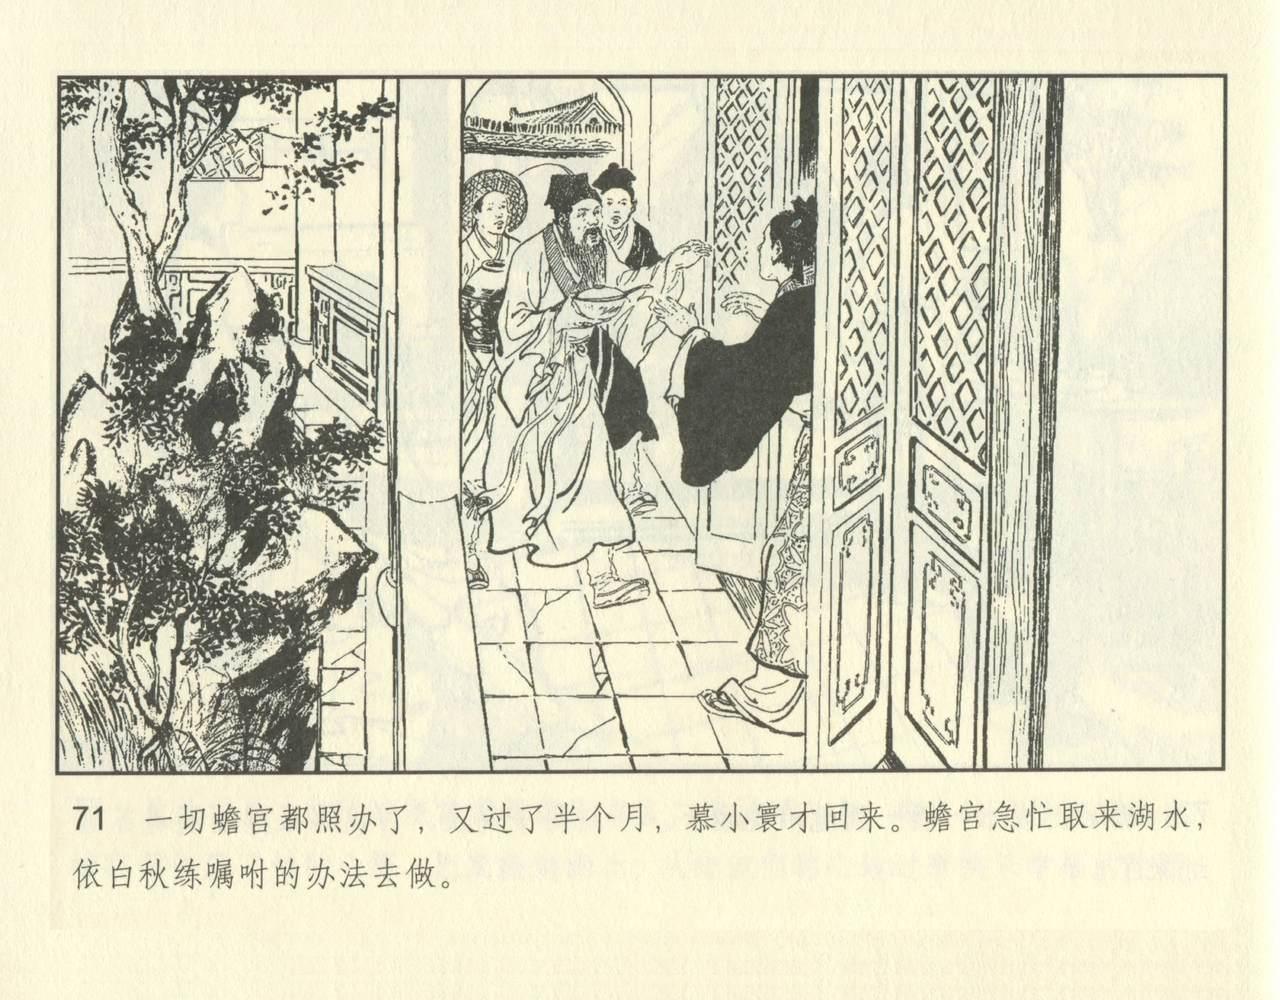 聊斋志异 张玮等绘 天津人民美术出版社 卷二十一 ~ 三十 120